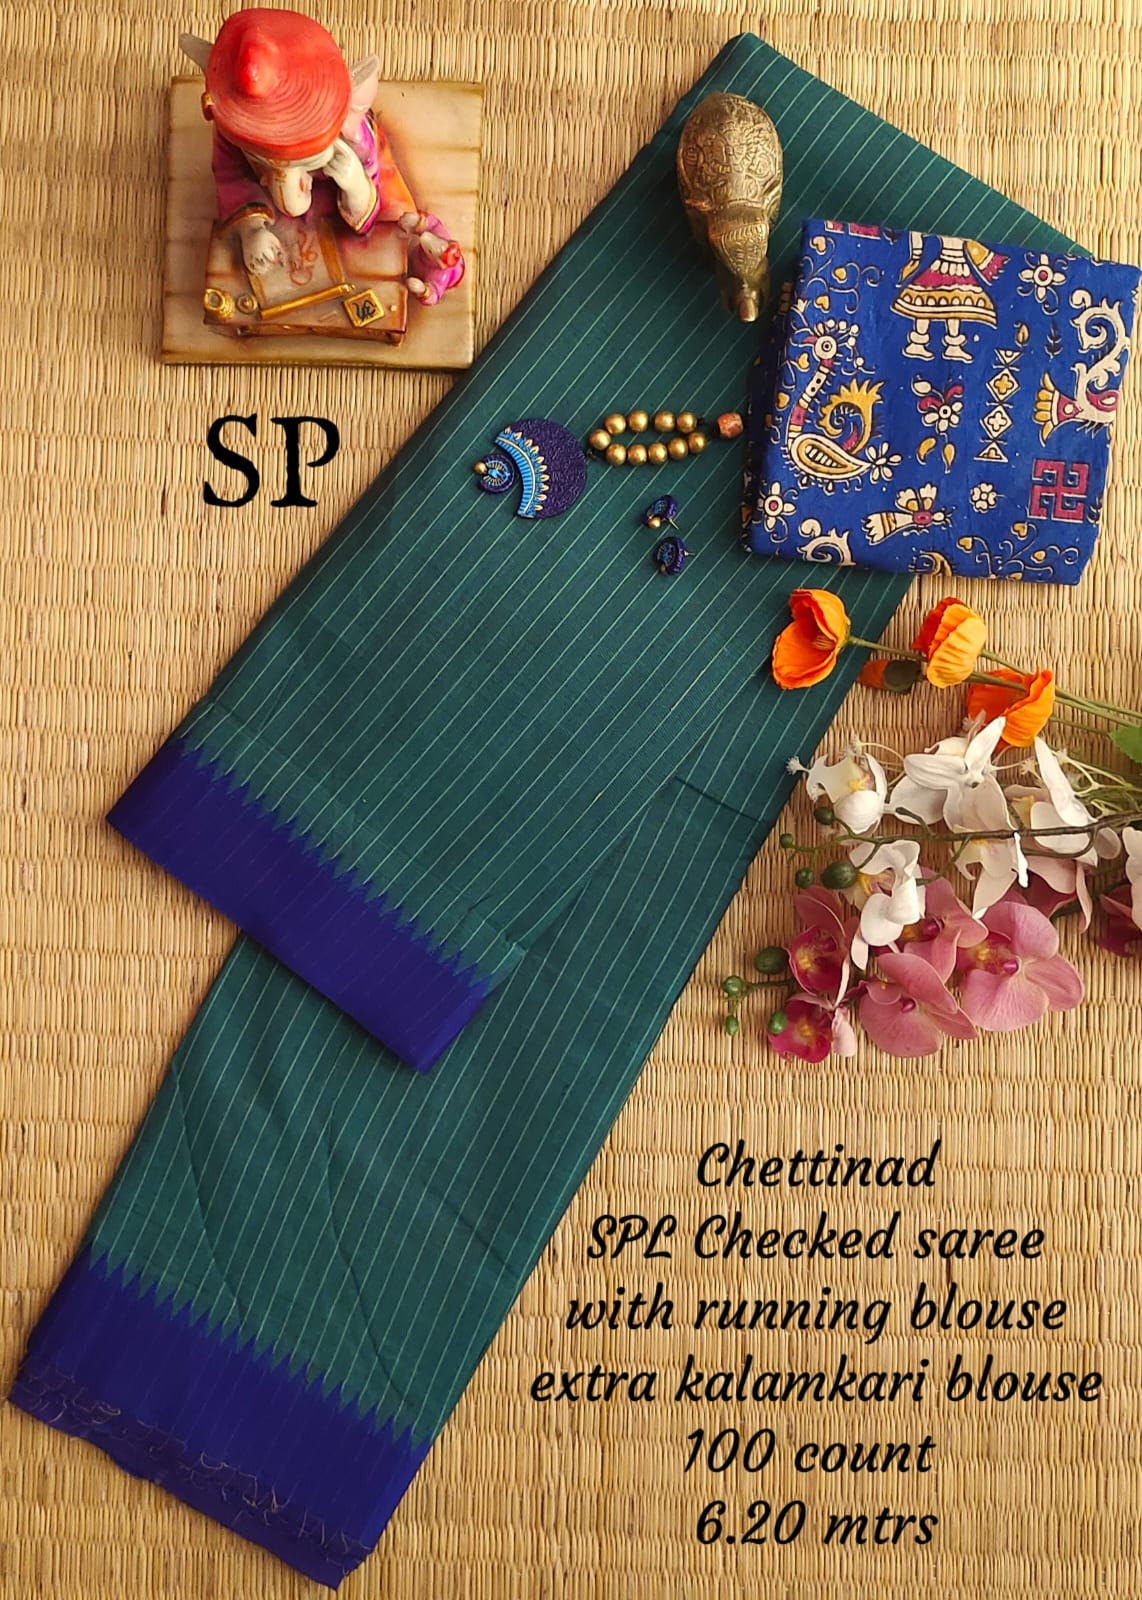 Chettinad cotton 100 count checked saree